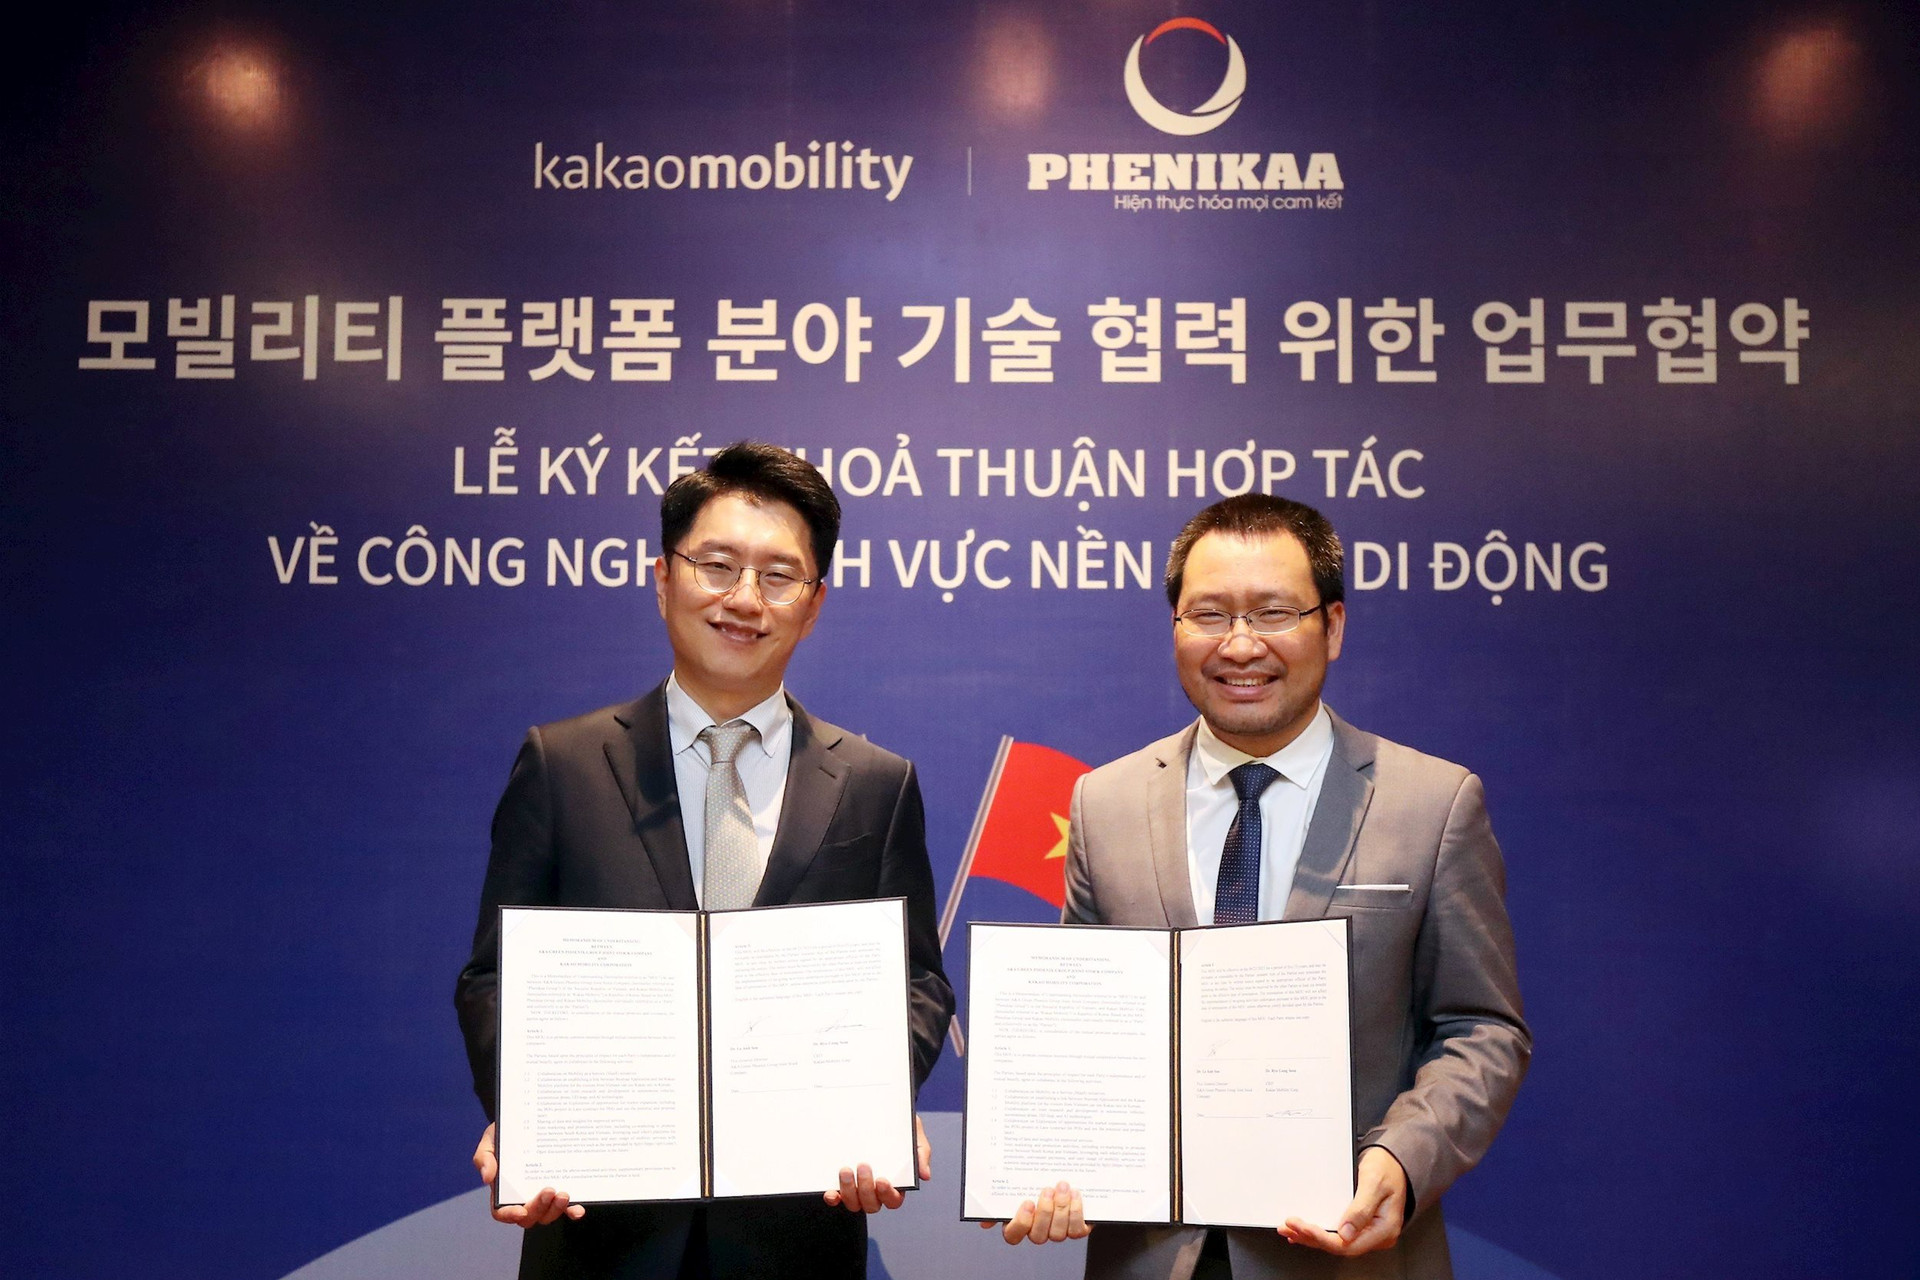 Tập đoàn của đại gia Hồ Xuân Năng ký kết hợp tác với hãng gọi xe Hàn Quốc: Phát triển taxi tự hành, bản đồ cho khách Việt tại Hàn Quốc - Ảnh 1.